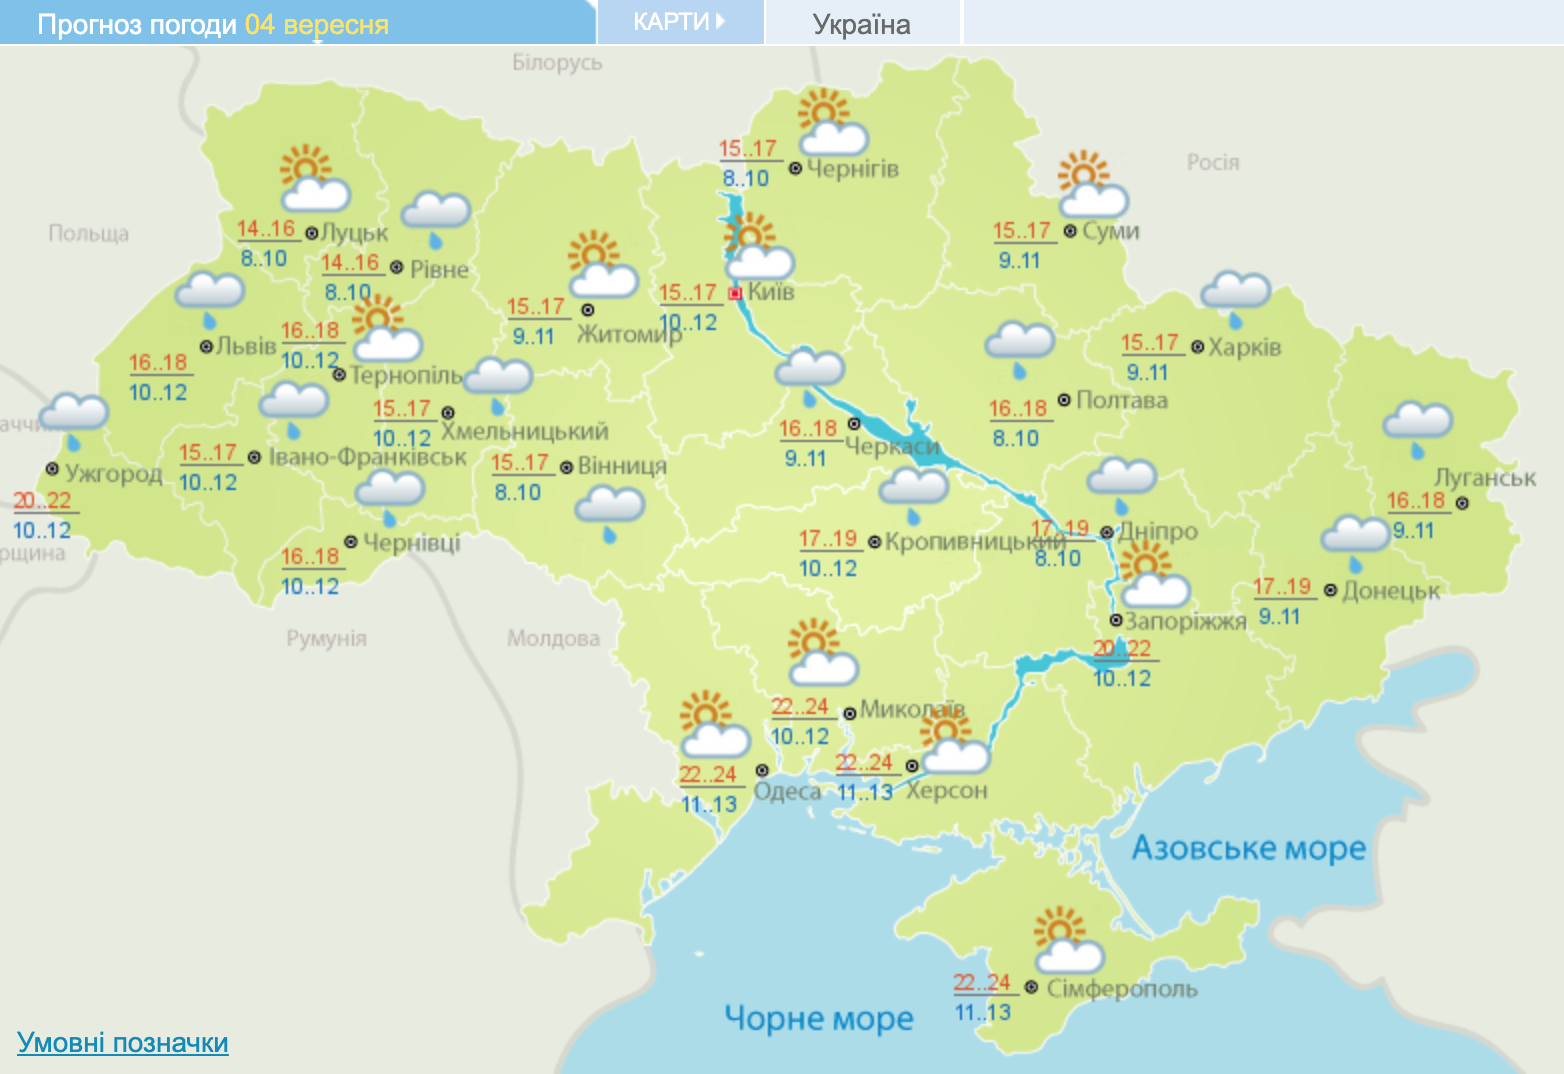 Погода в Україні. Карта: Укргідрометцентр